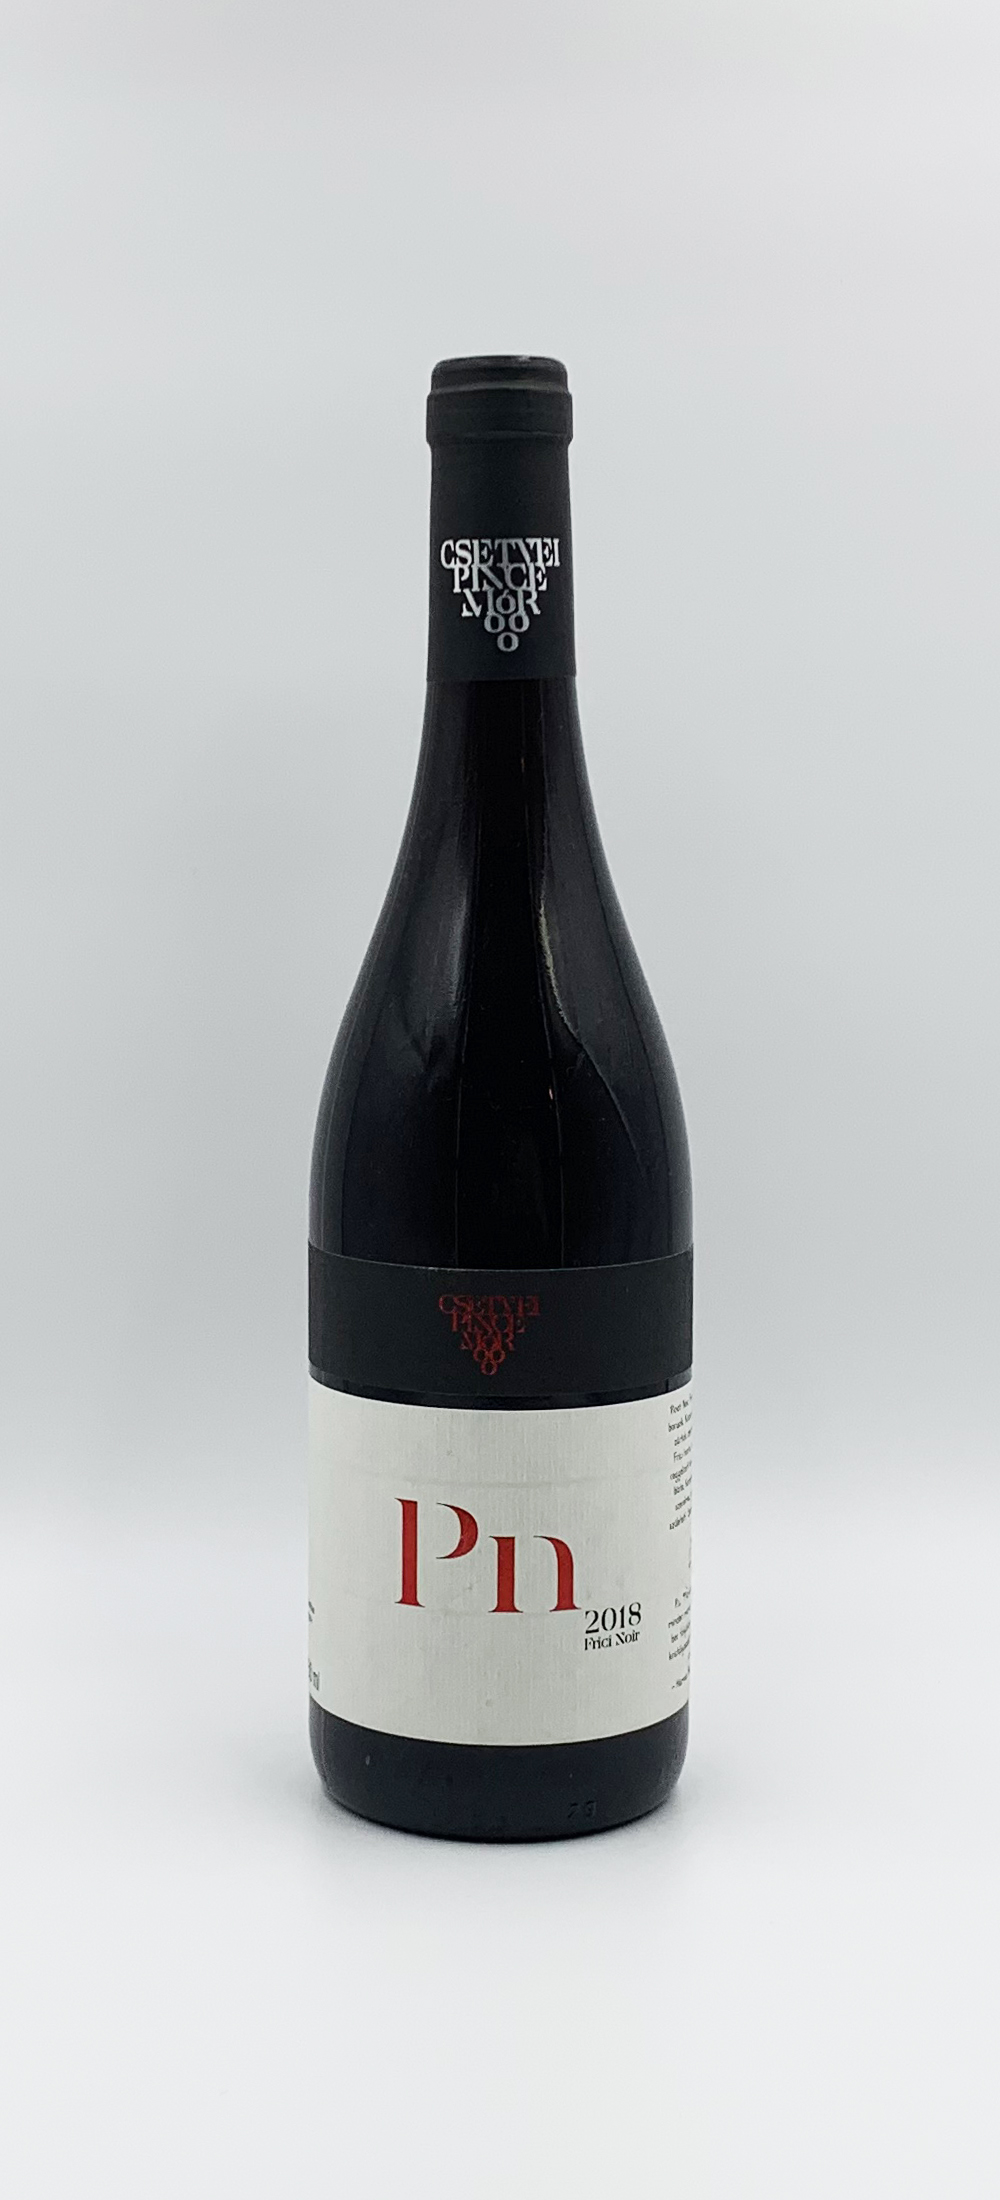 Csetvei Pince - Noir 2018 - bor és pezsgő webshop